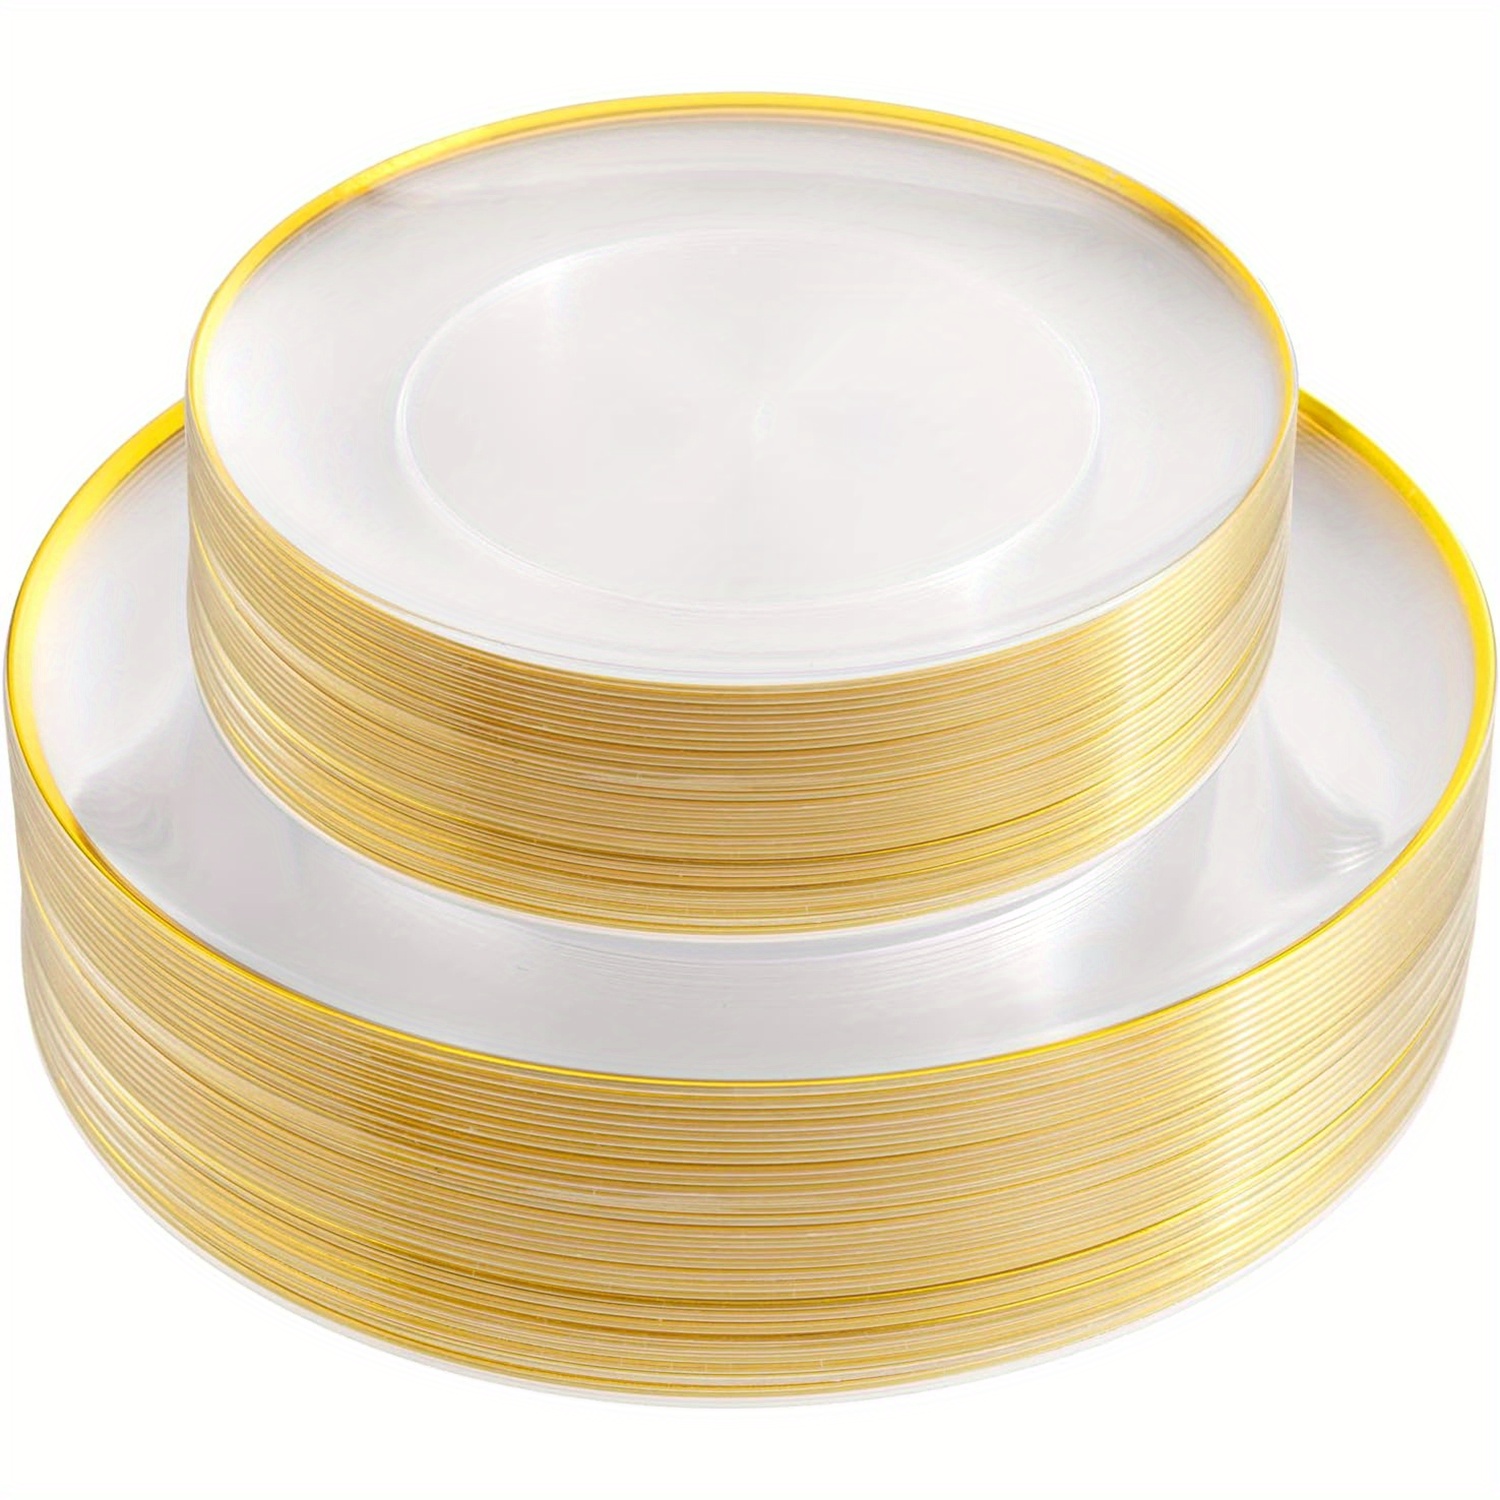 I00000 60 platos de plástico blanco y dorado, platos desechables de 7.5  pulgadas para ensalada/postre dorados, platos de plástico blanco con borde